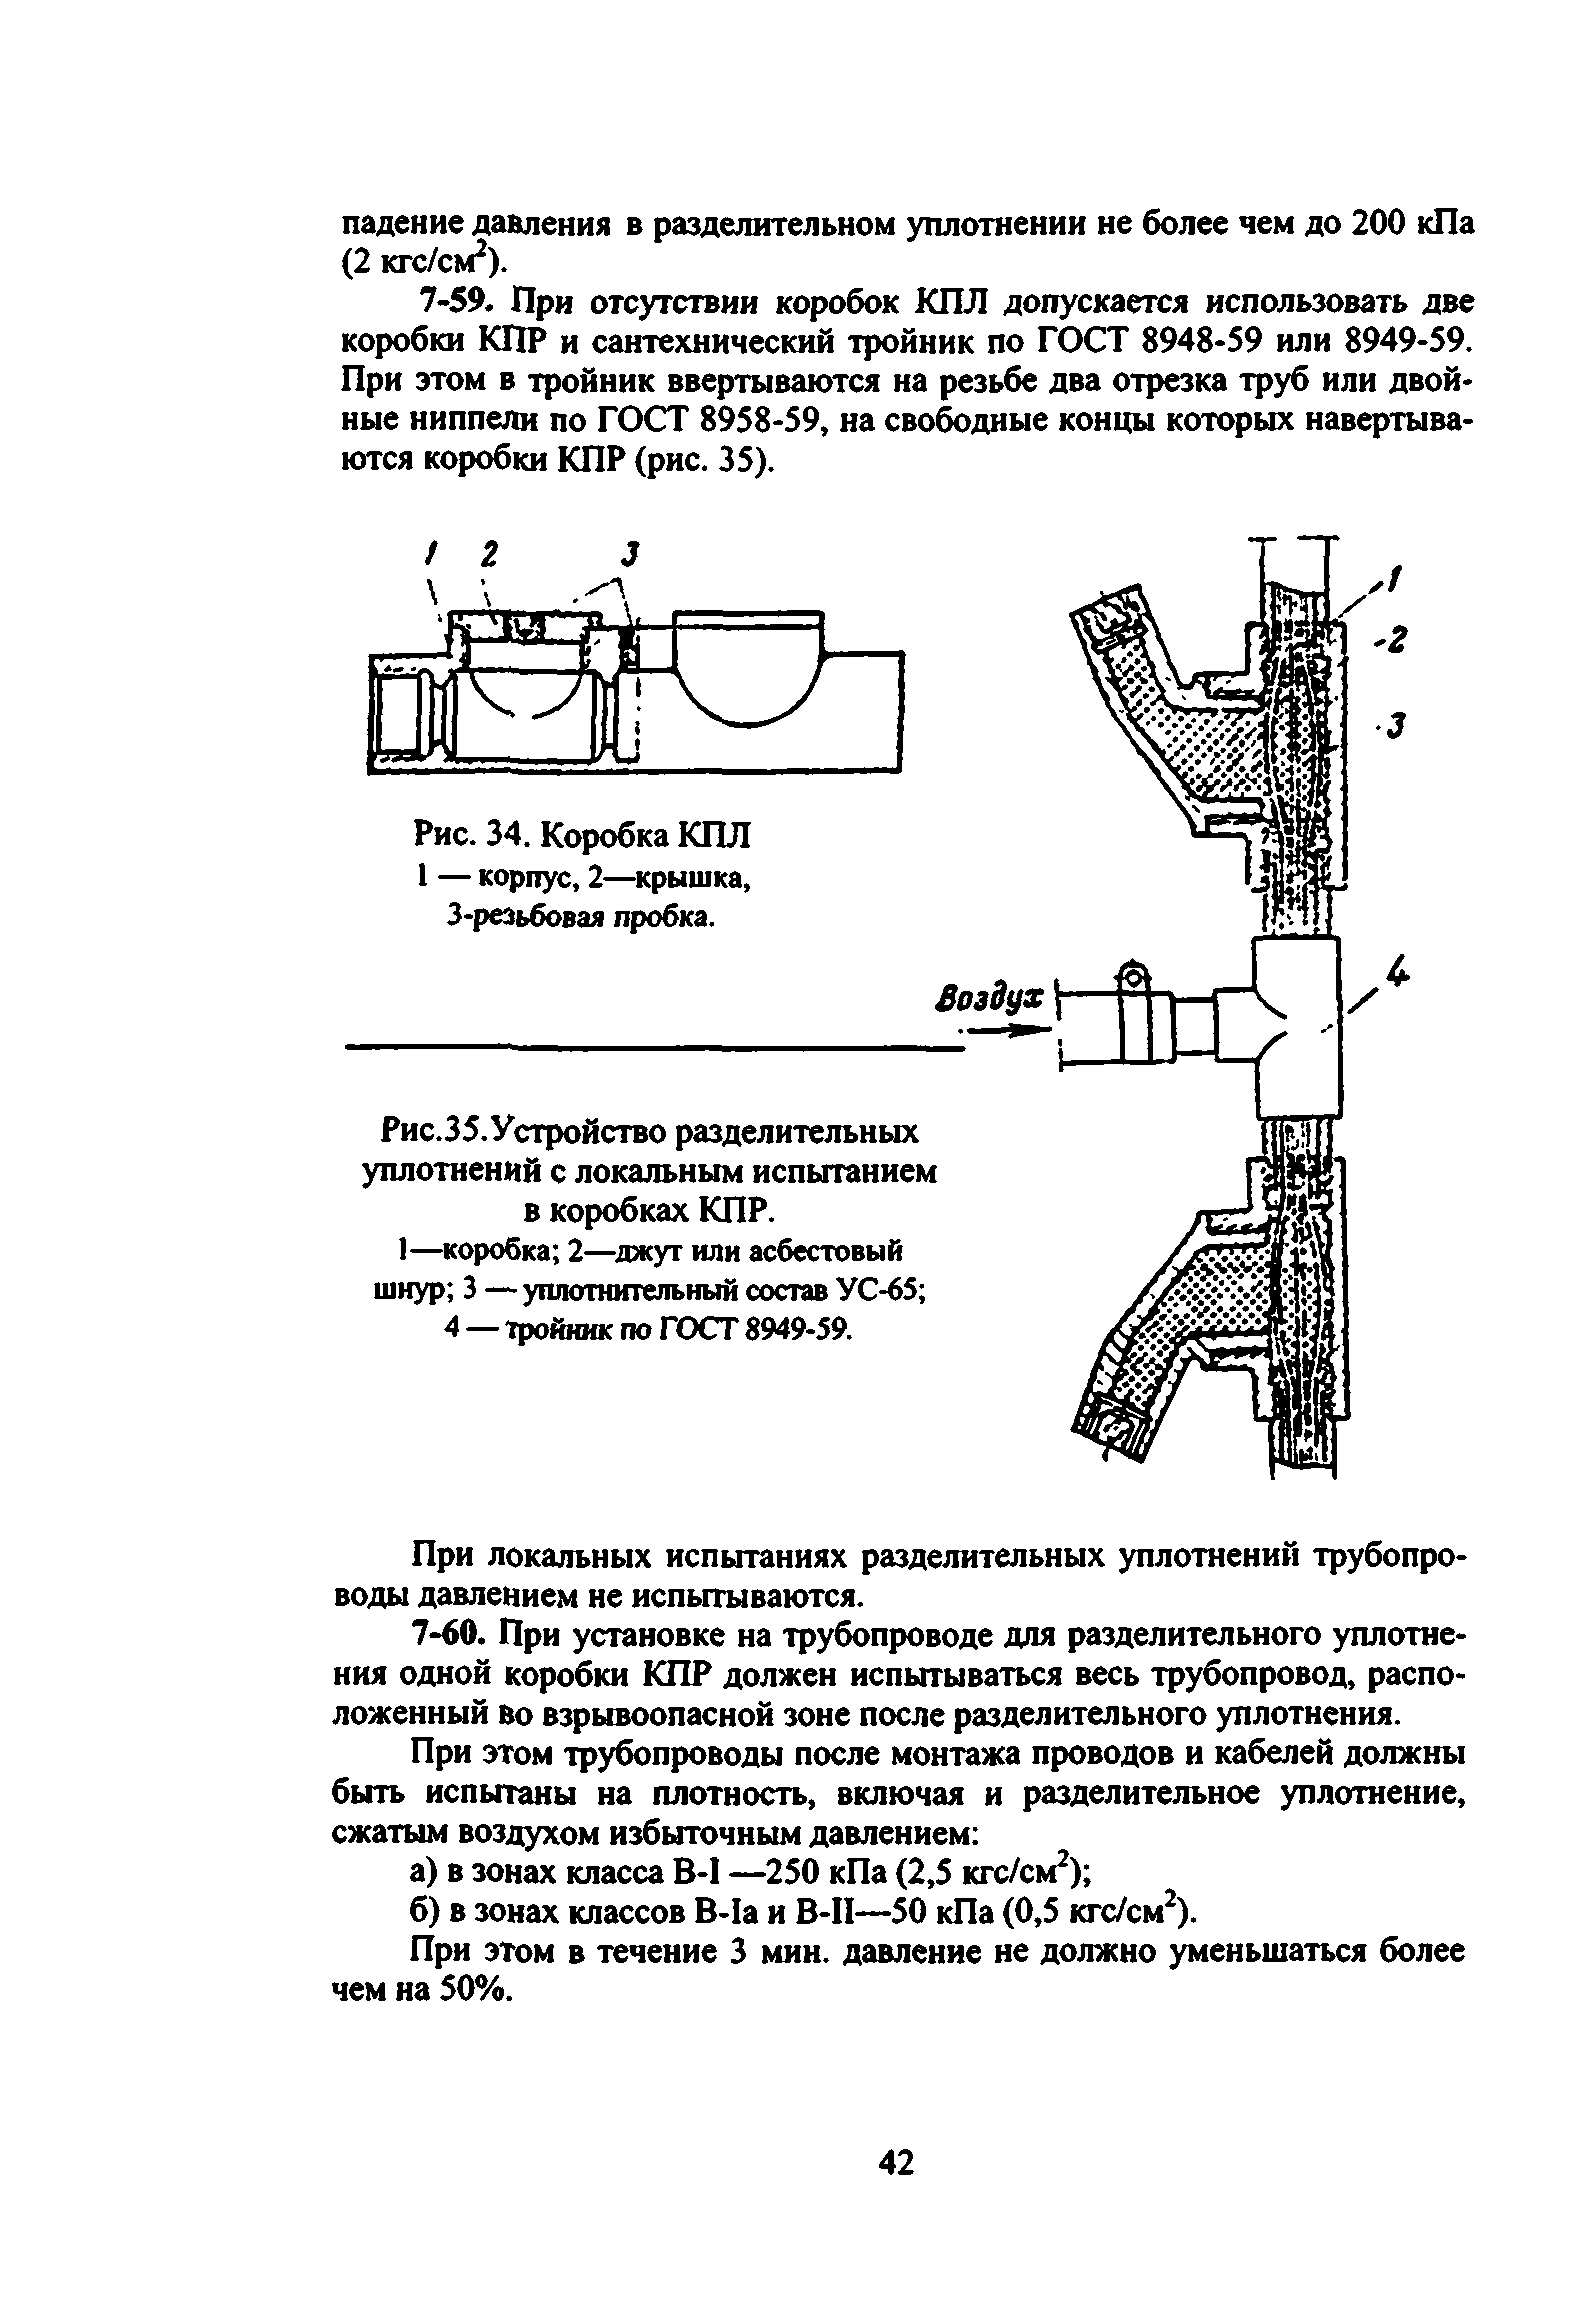 ВСН 332-74